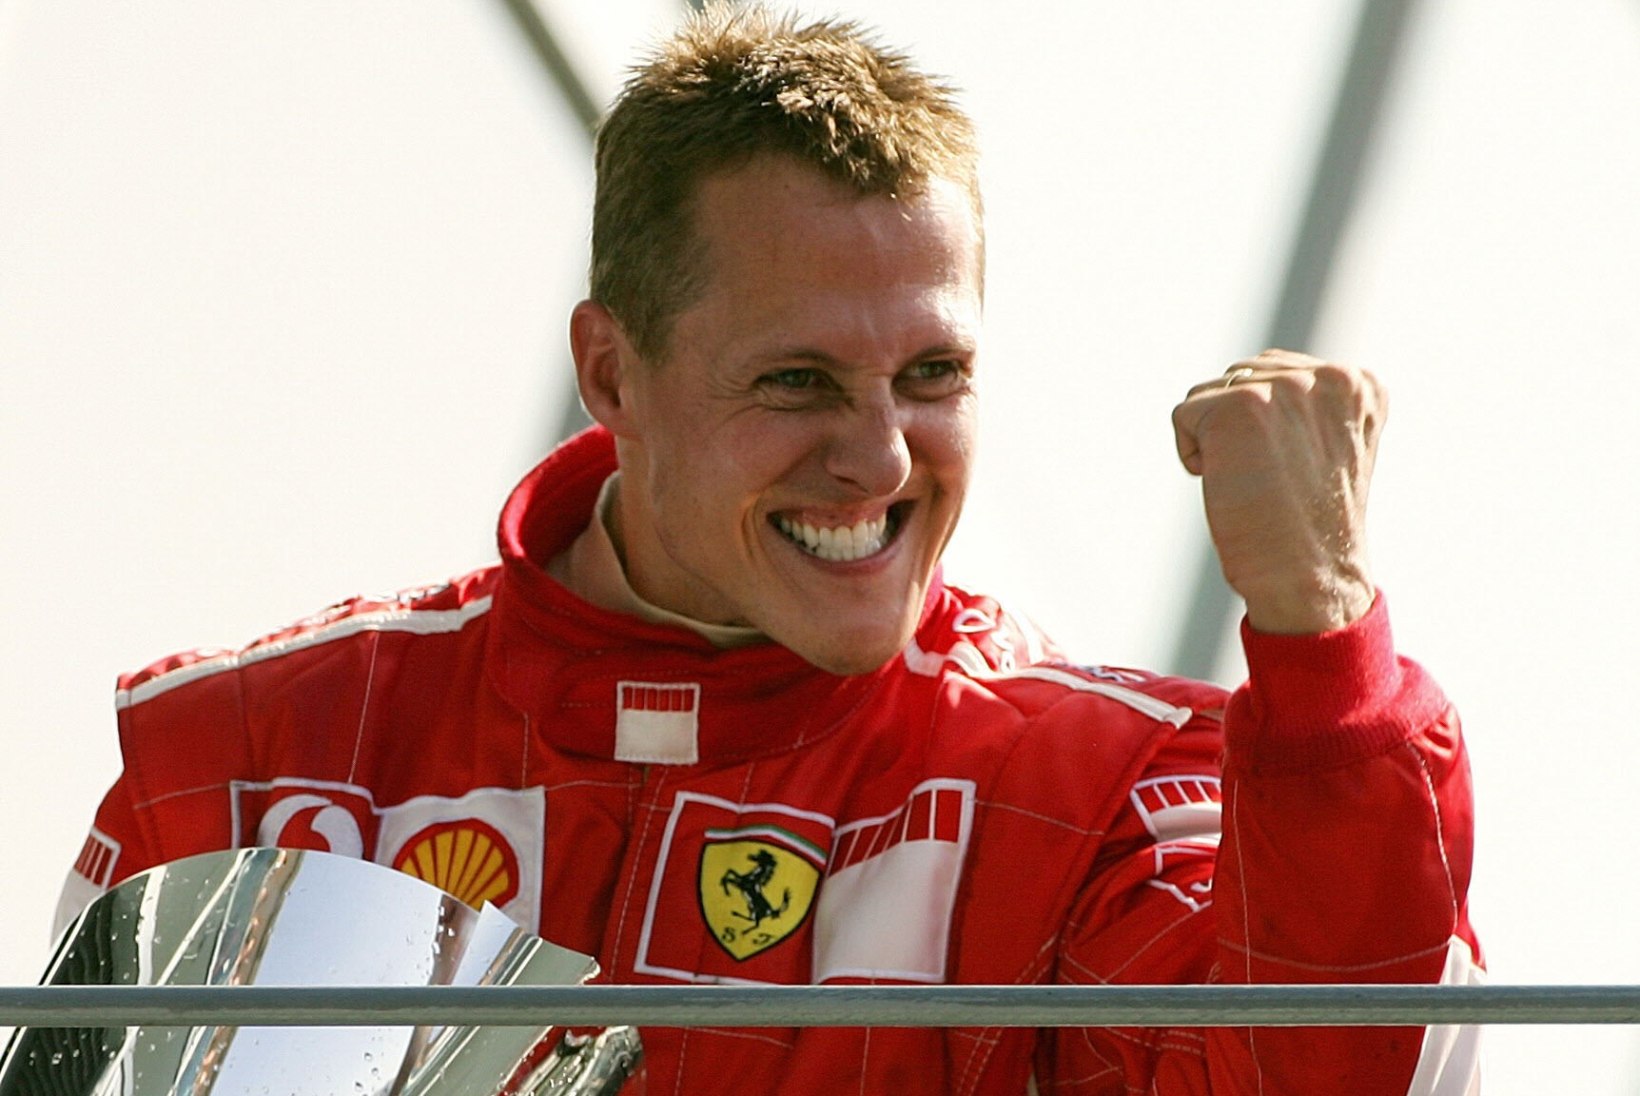 Endine vormeliäss ladus Vettelile ja kogu sarjale puid alla, kuid ülistas Schumacherit